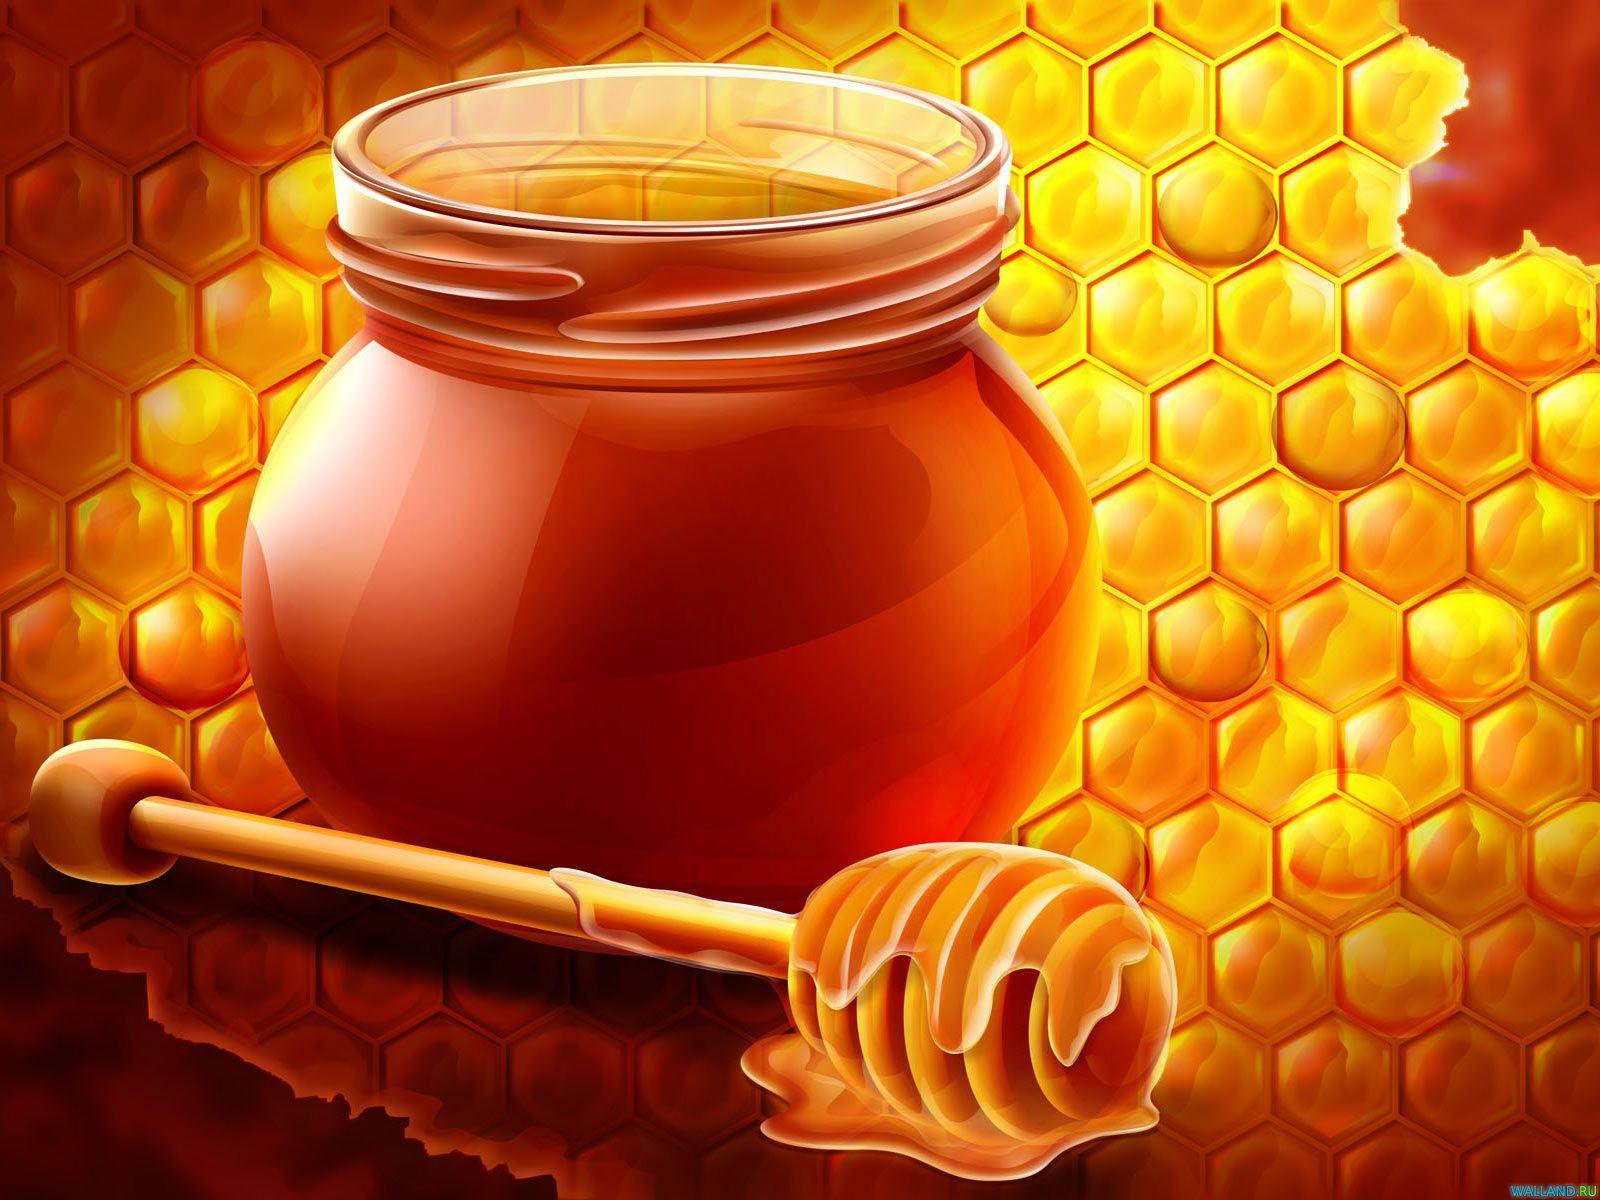 Honey Bee Hive